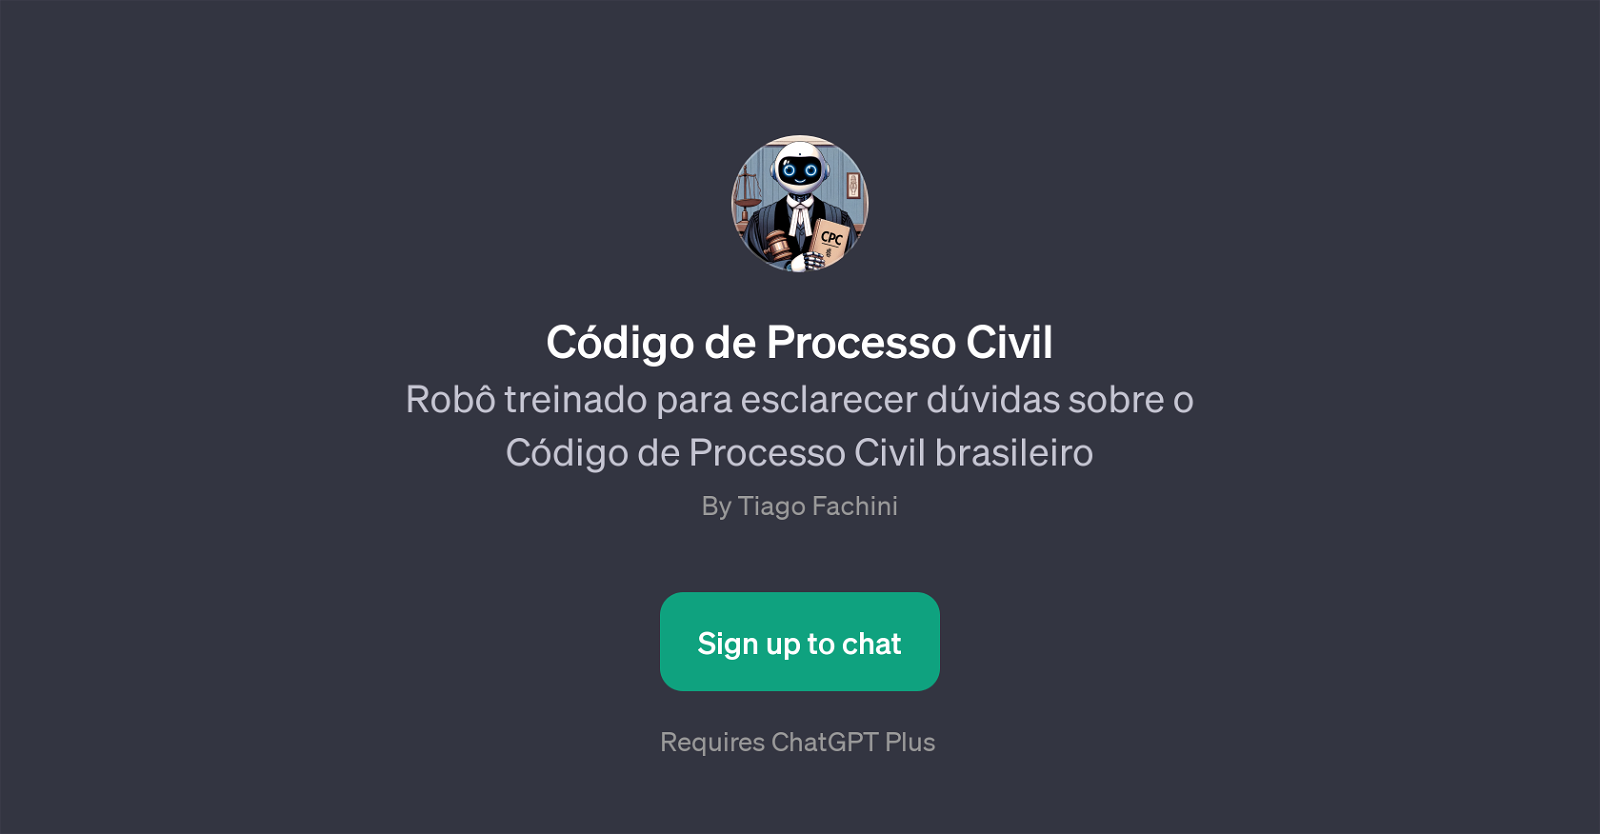 Cdigo de Processo Civil website